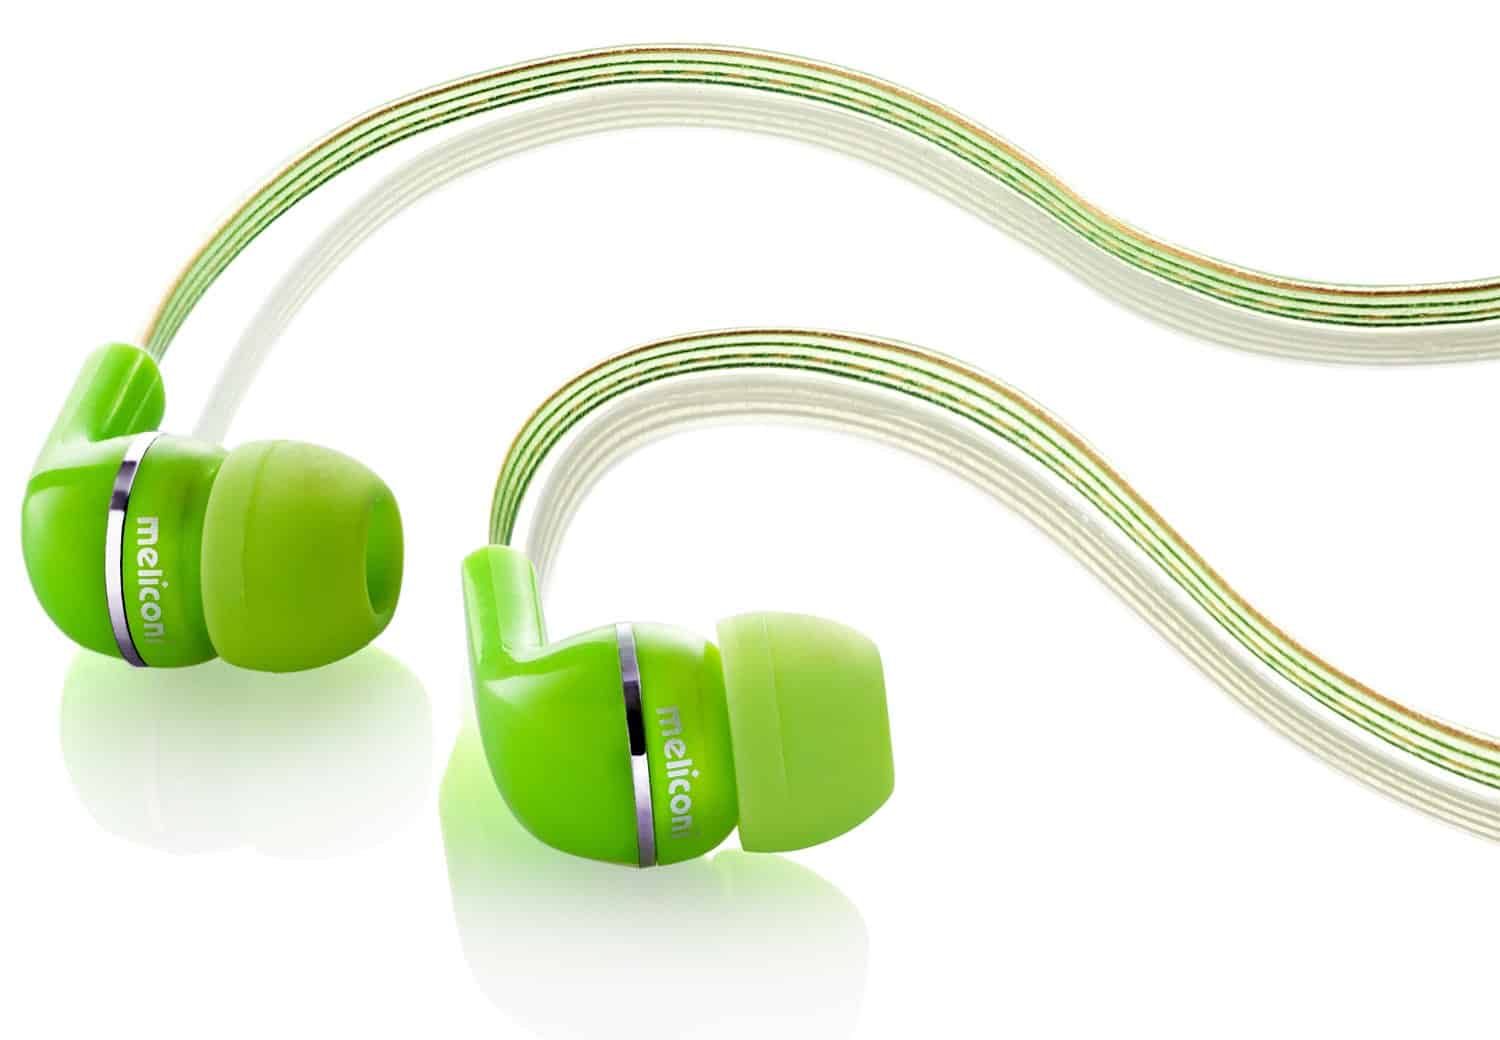 Nuovi colorati accessori  Meliconi per ascoltare la musica e per la telefonia - Le Shopping News Il Magazine per gli Appassionati di Moda e Tendenze